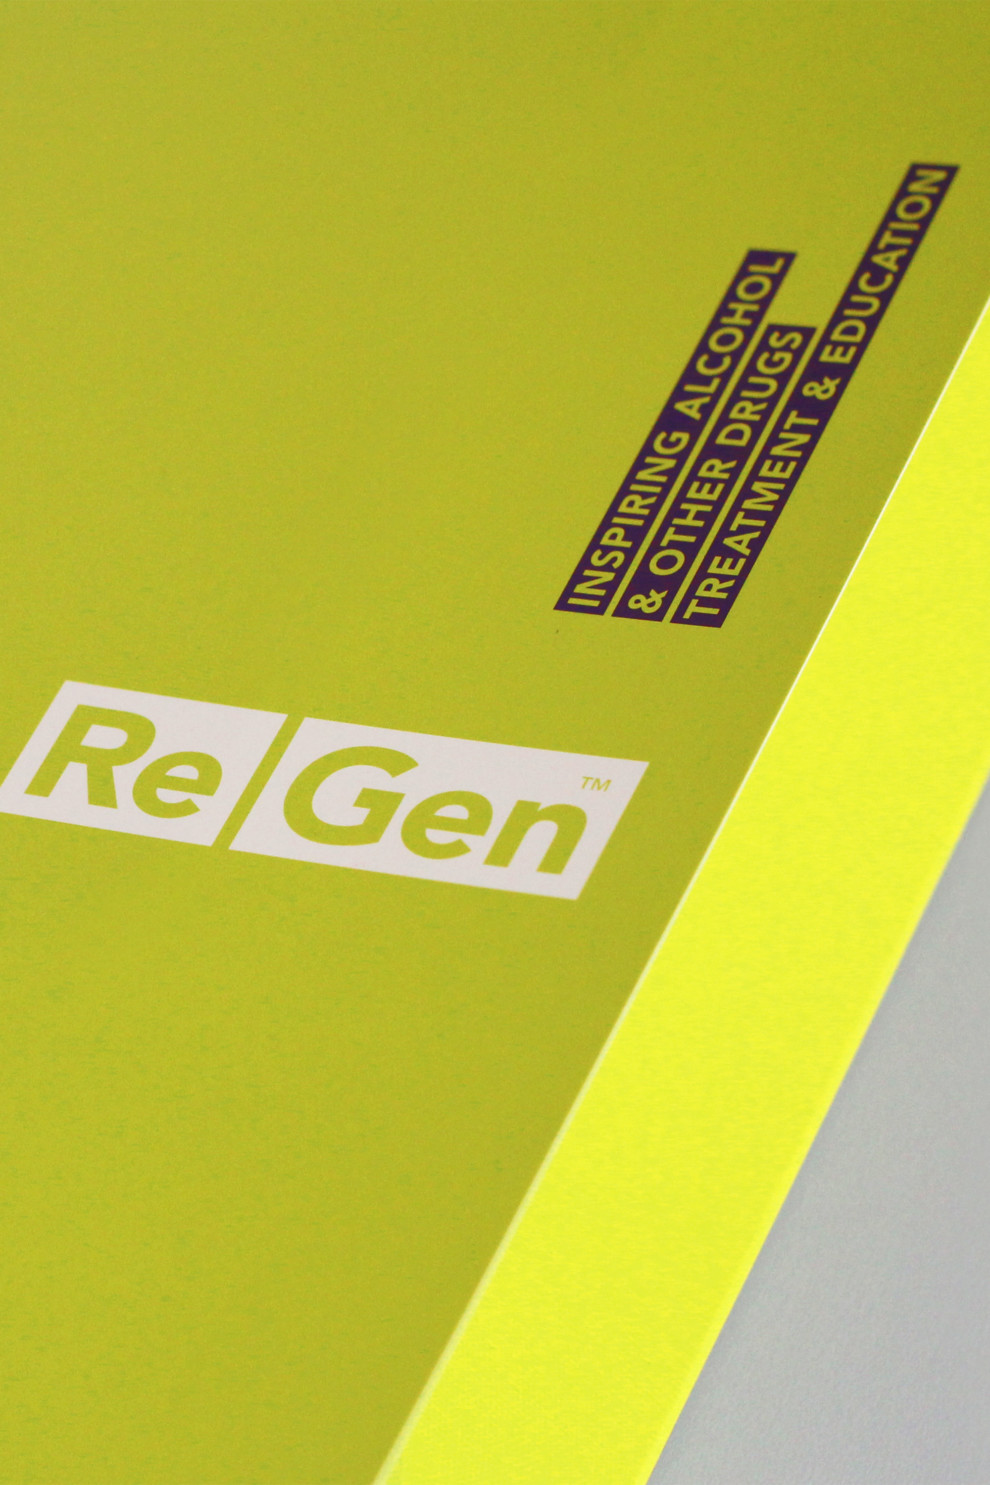 ReGen - Folder